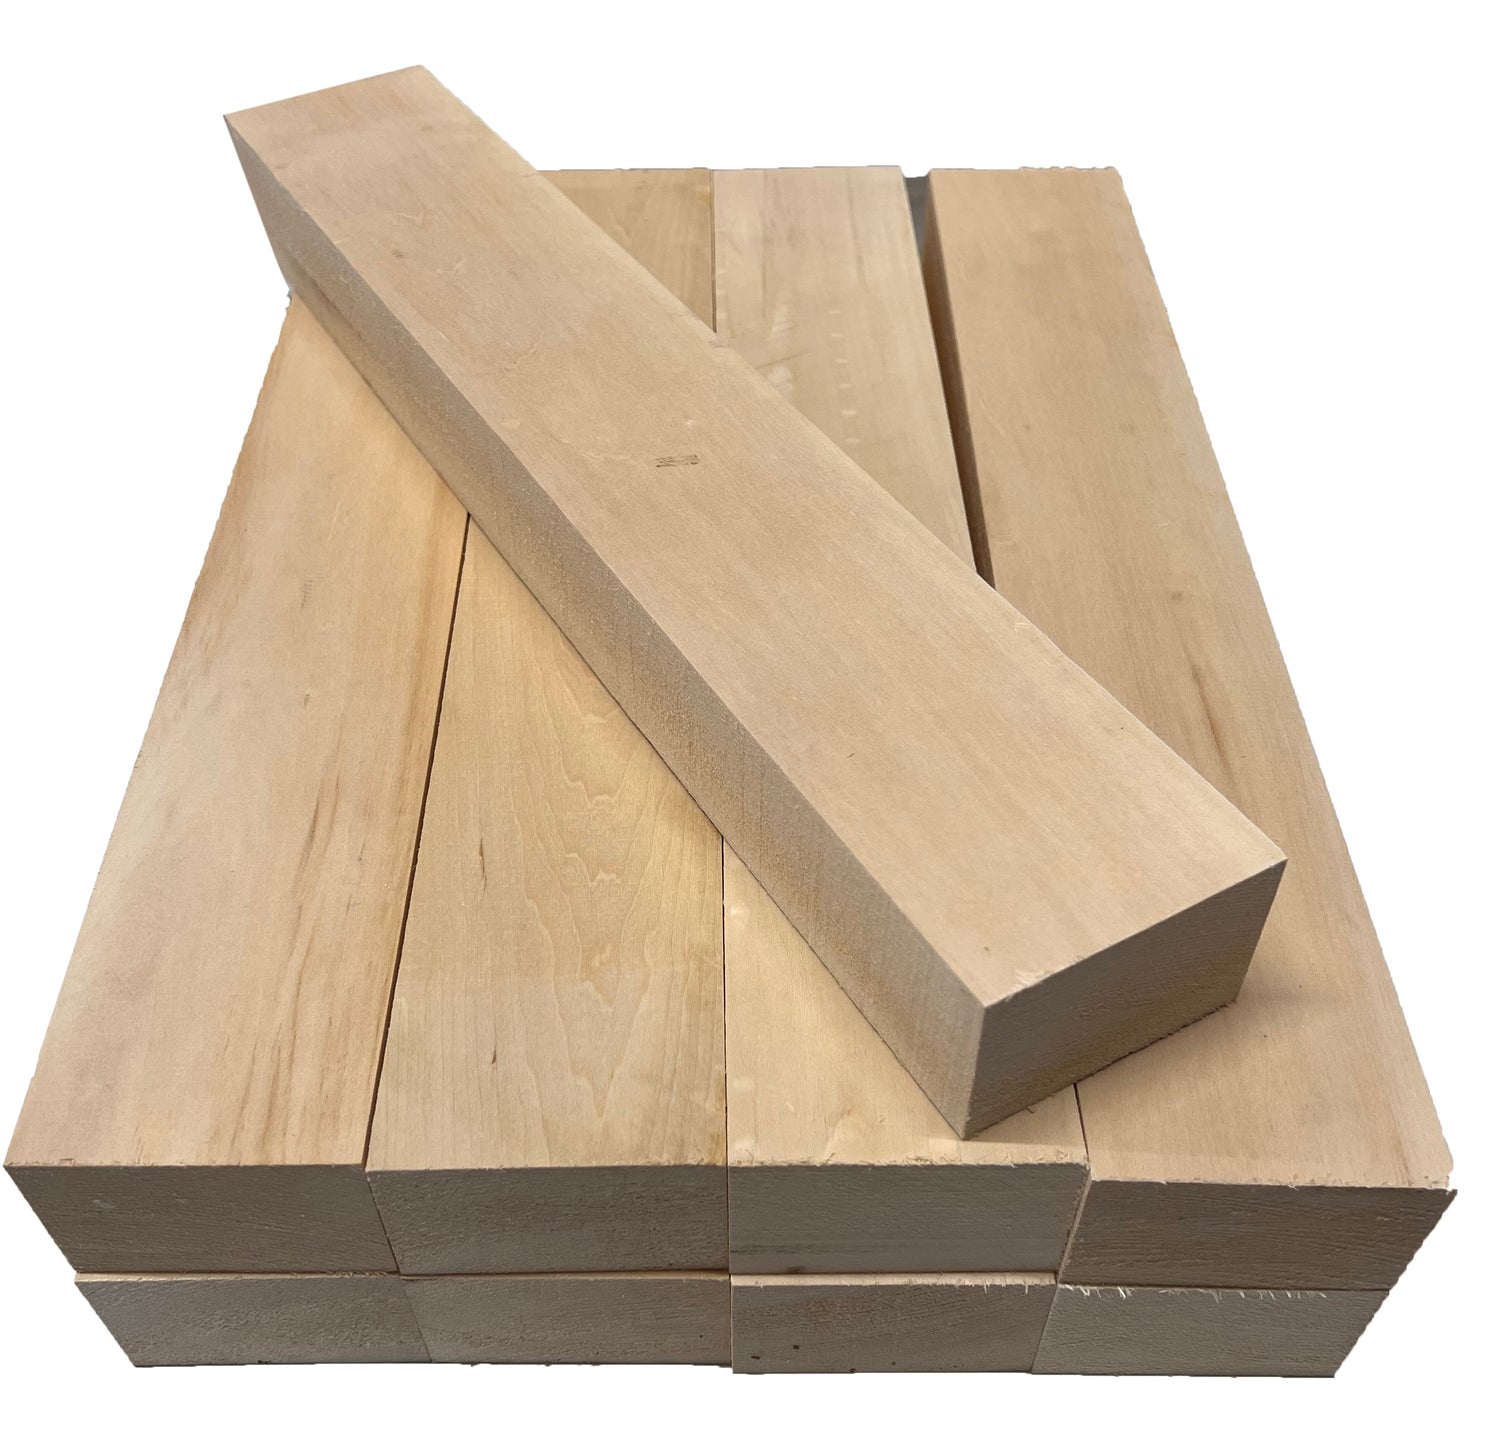 Cuál es la madera más suave para tallar? - Quora